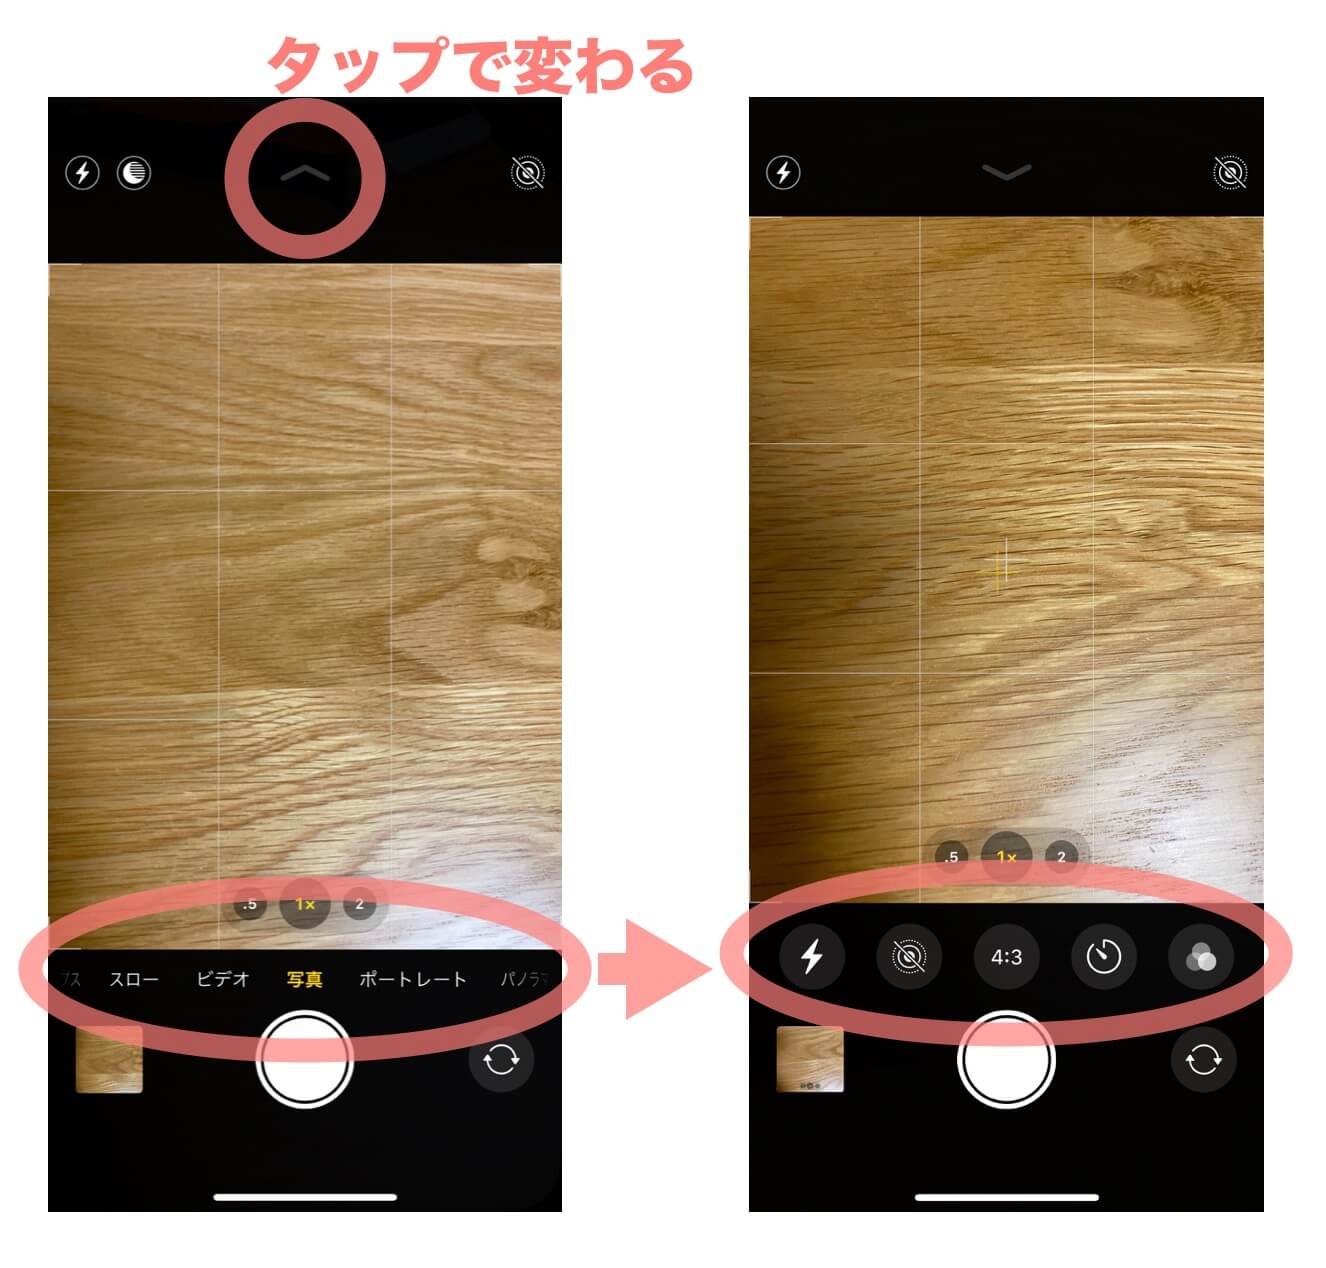 Iphone 12 11 11 Pro Seで連写する方法紹介 これまでのiphoneとは操作が違う カメラ Imagination